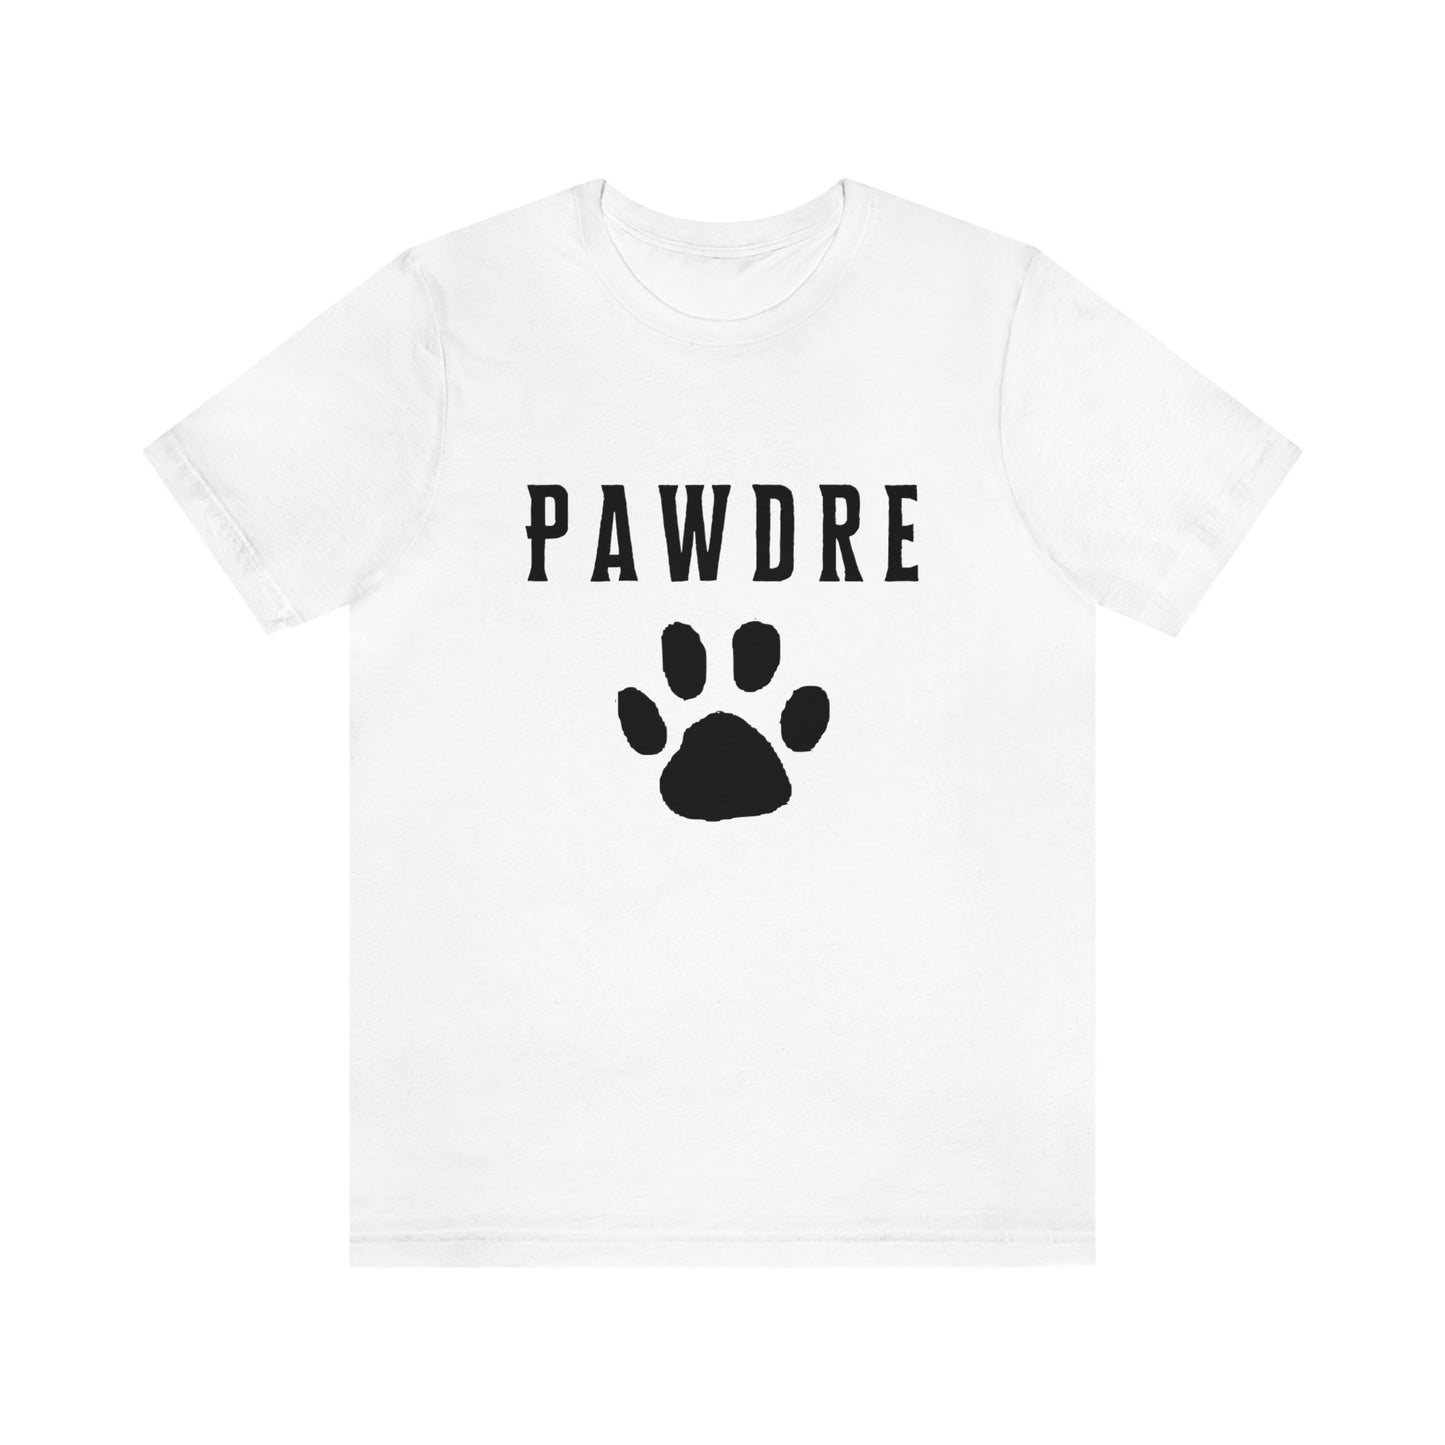 Pawdre Paw Serif Style - Unisex T-Shirt